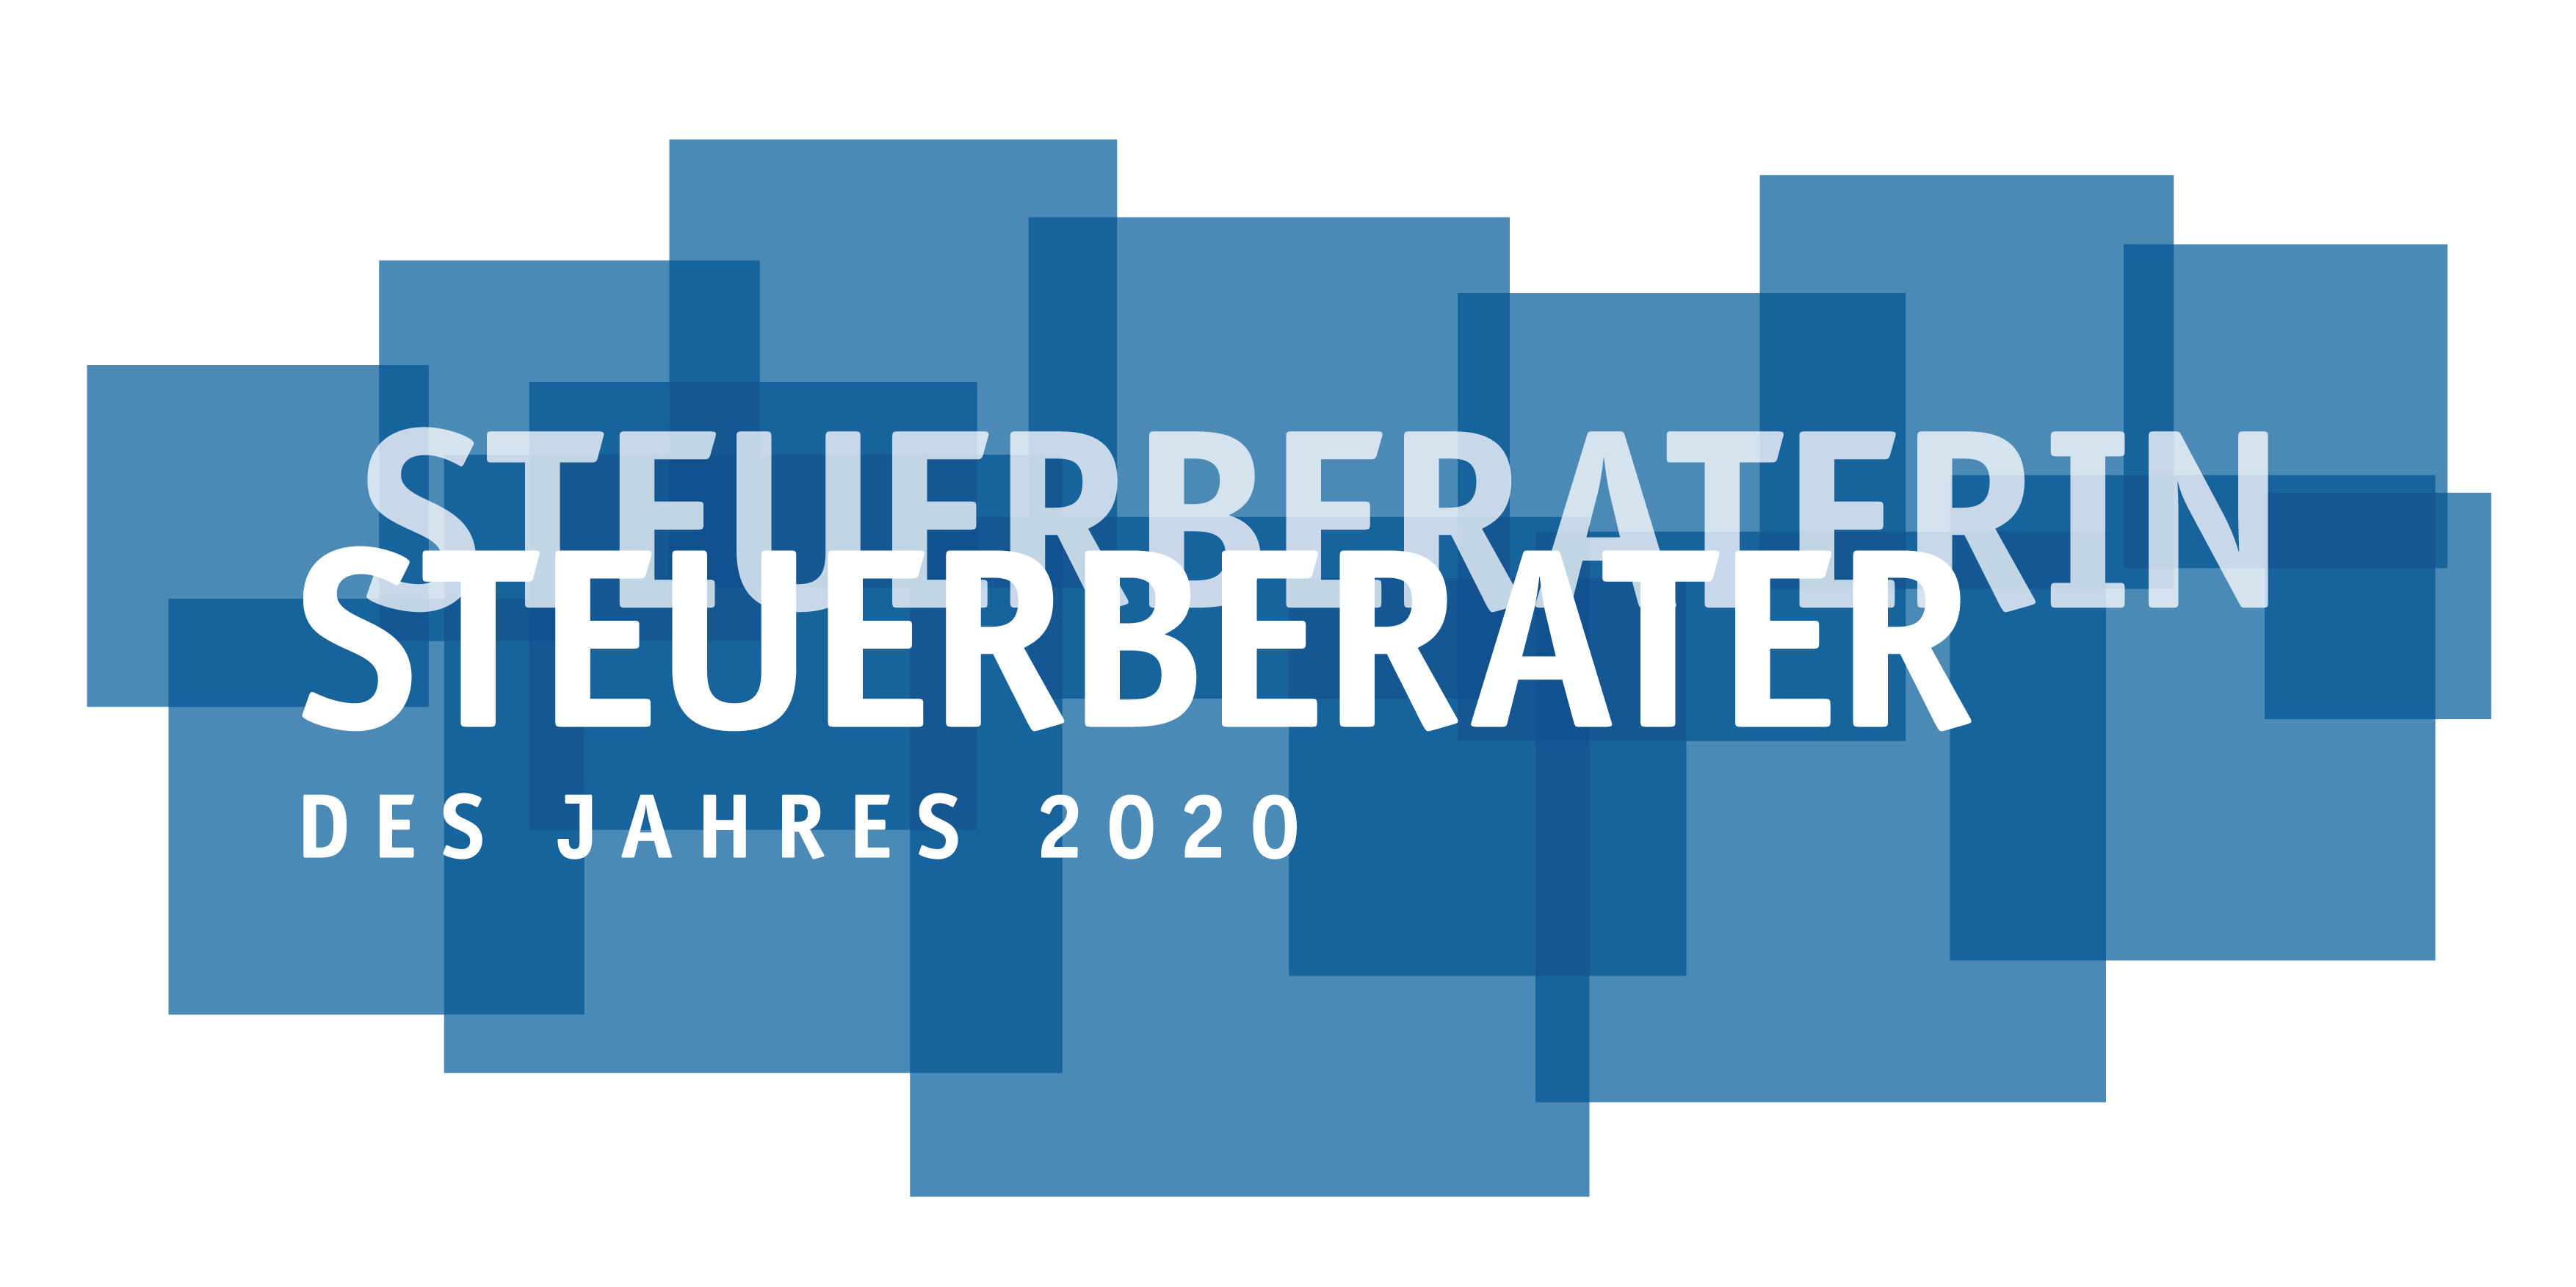 Wir sind Steuerberater des Jahres 2020 für Tirol Geisler & Hirschberger Steuerberatungs GmbH Innsbruck 0512 327825